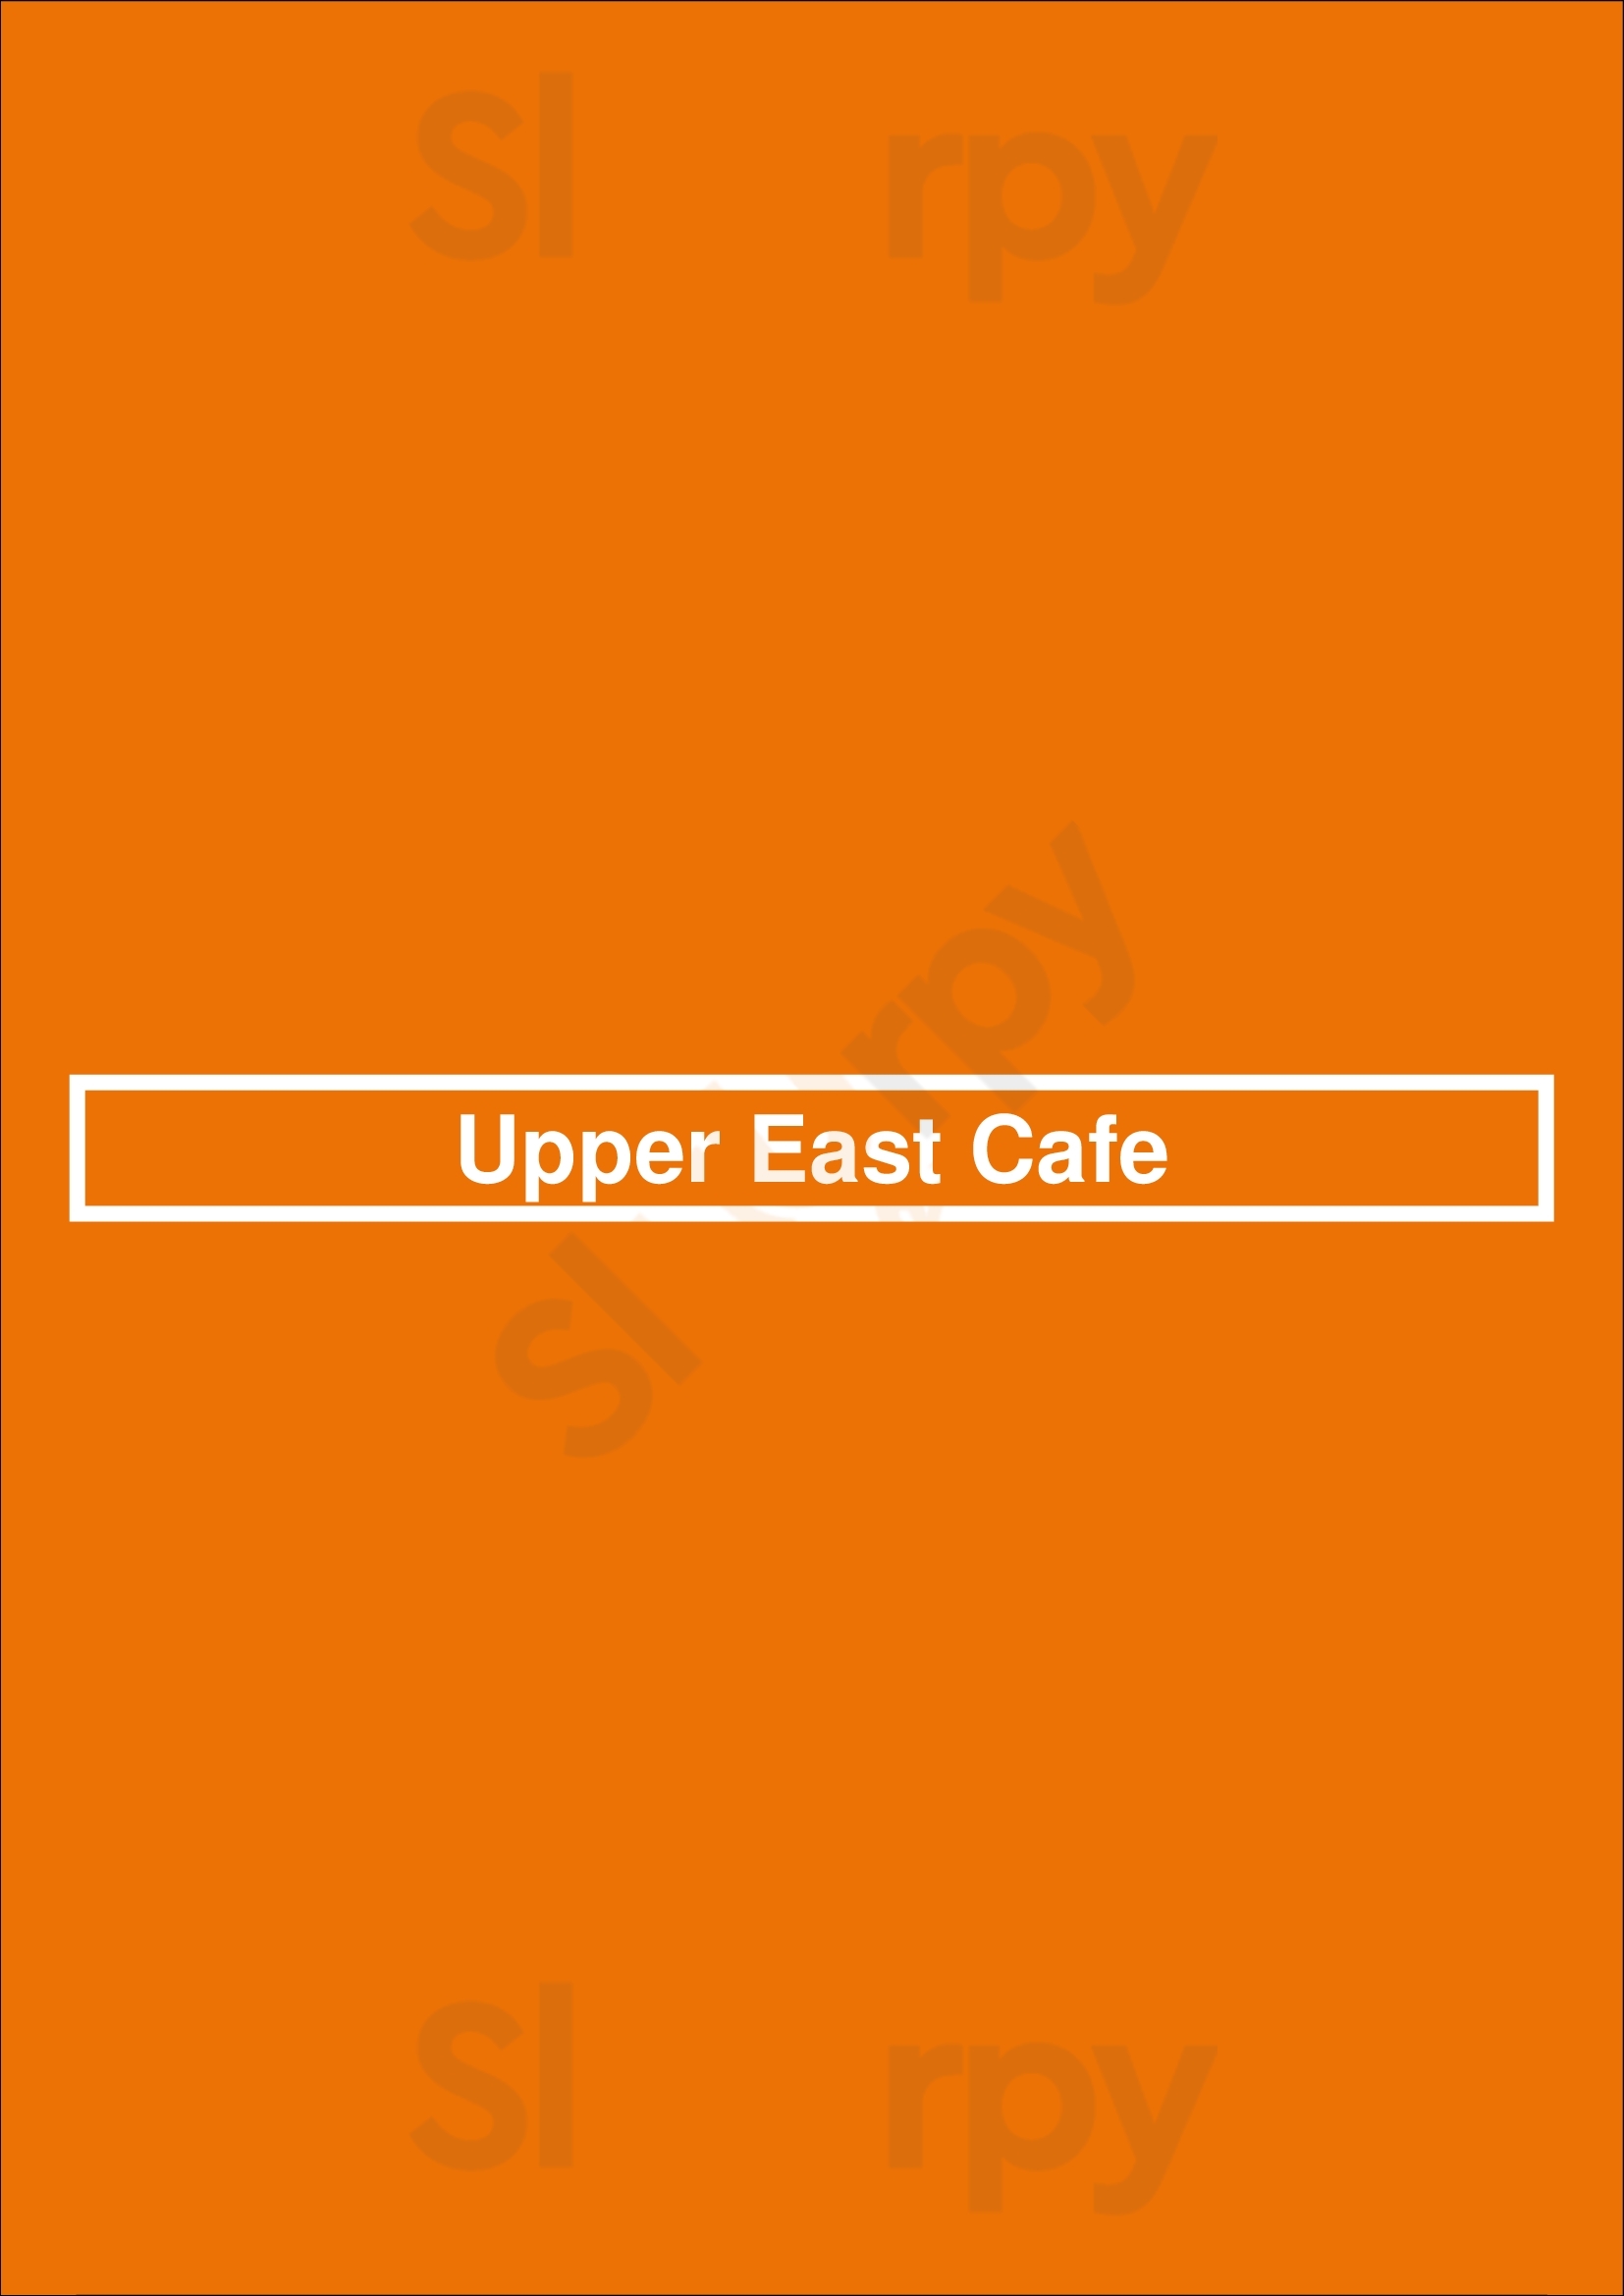 Upper East Cafe New York City Menu - 1